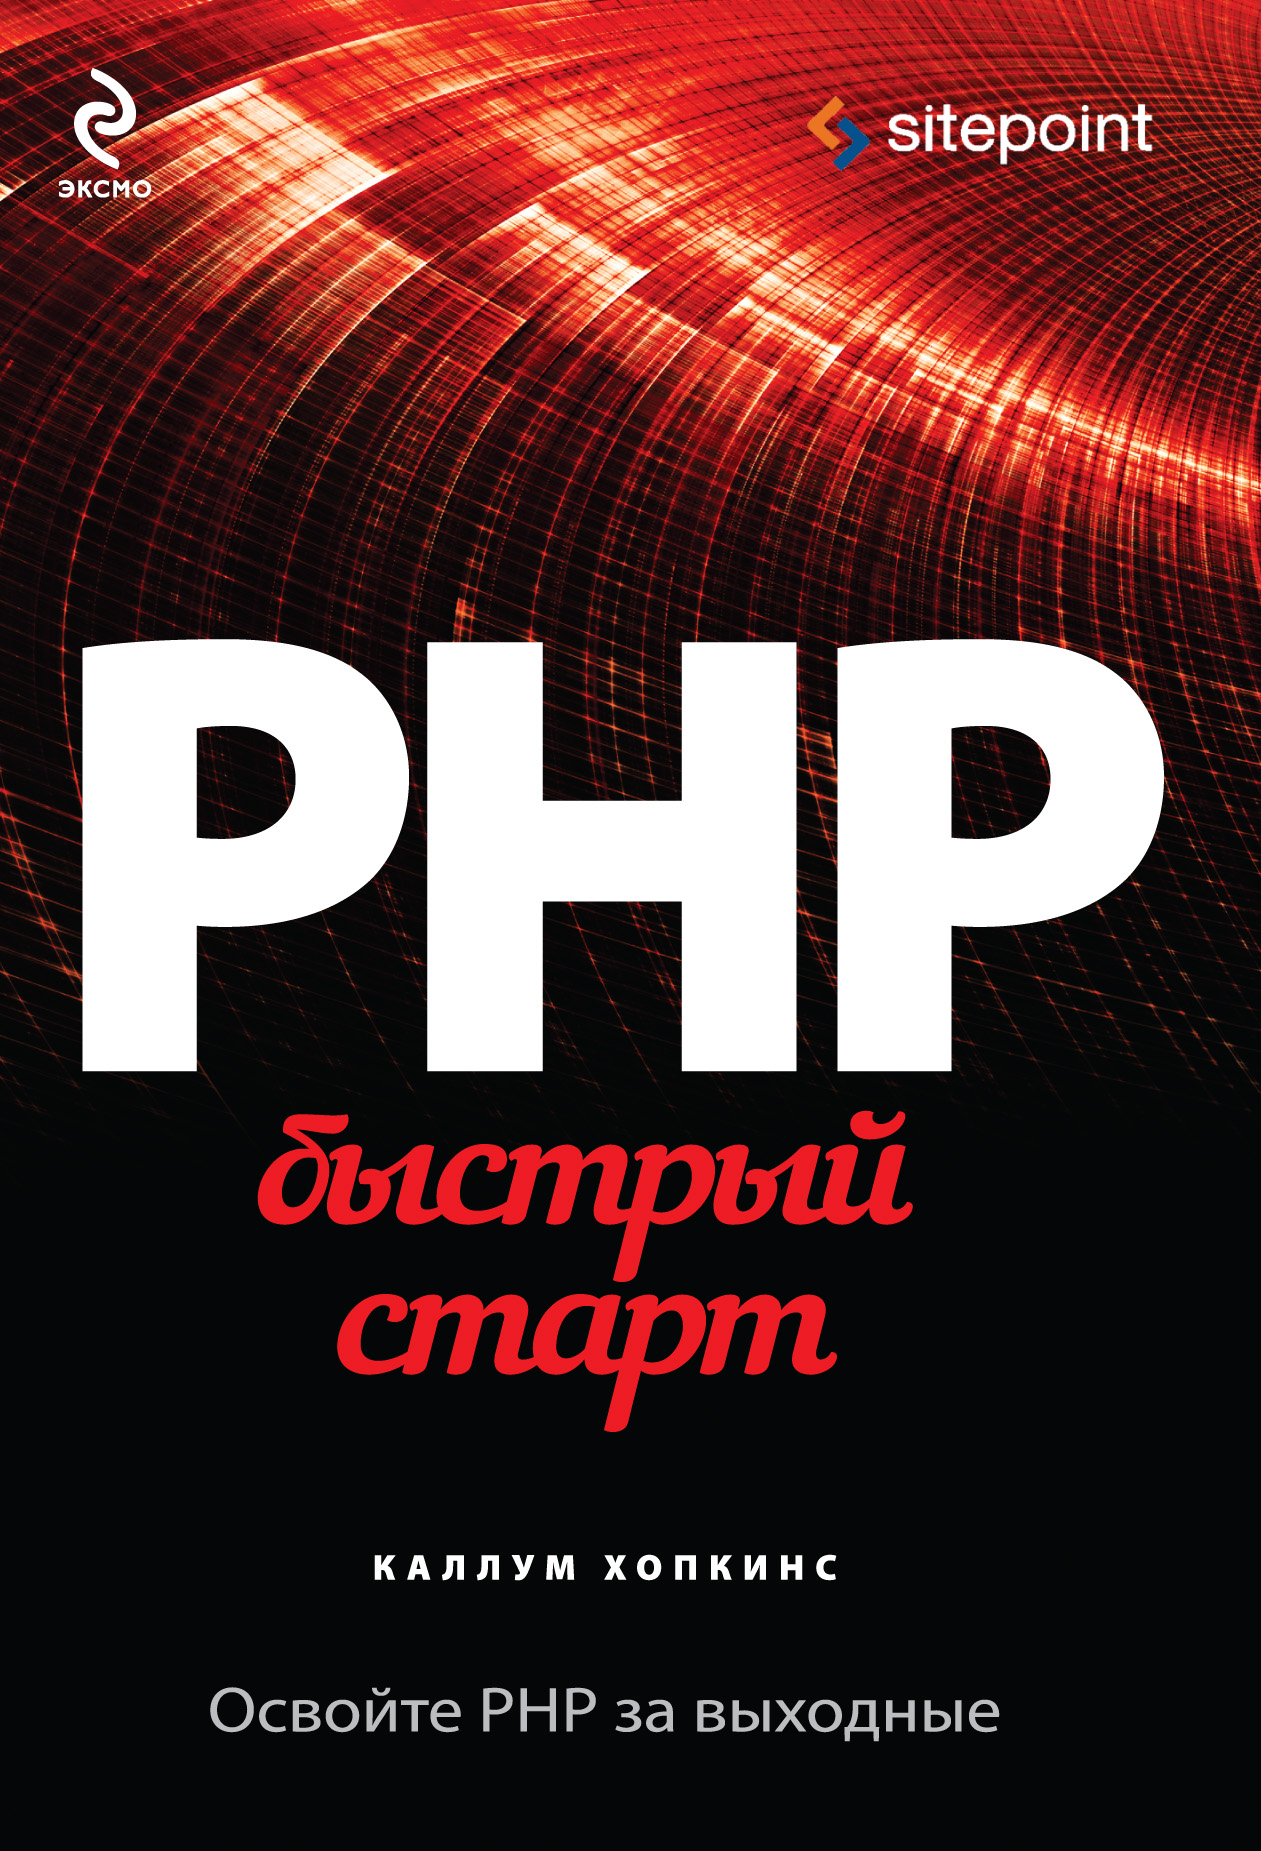 Книга Компьютер на 100% PHP. Быстрый старт созданная Михаил Райтман, Каллум Хопкинс может относится к жанру зарубежная компьютерная литература, зарубежная справочная литература, программирование, программы, руководства. Стоимость электронной книги PHP. Быстрый старт с идентификатором 8383732 составляет 479.00 руб.